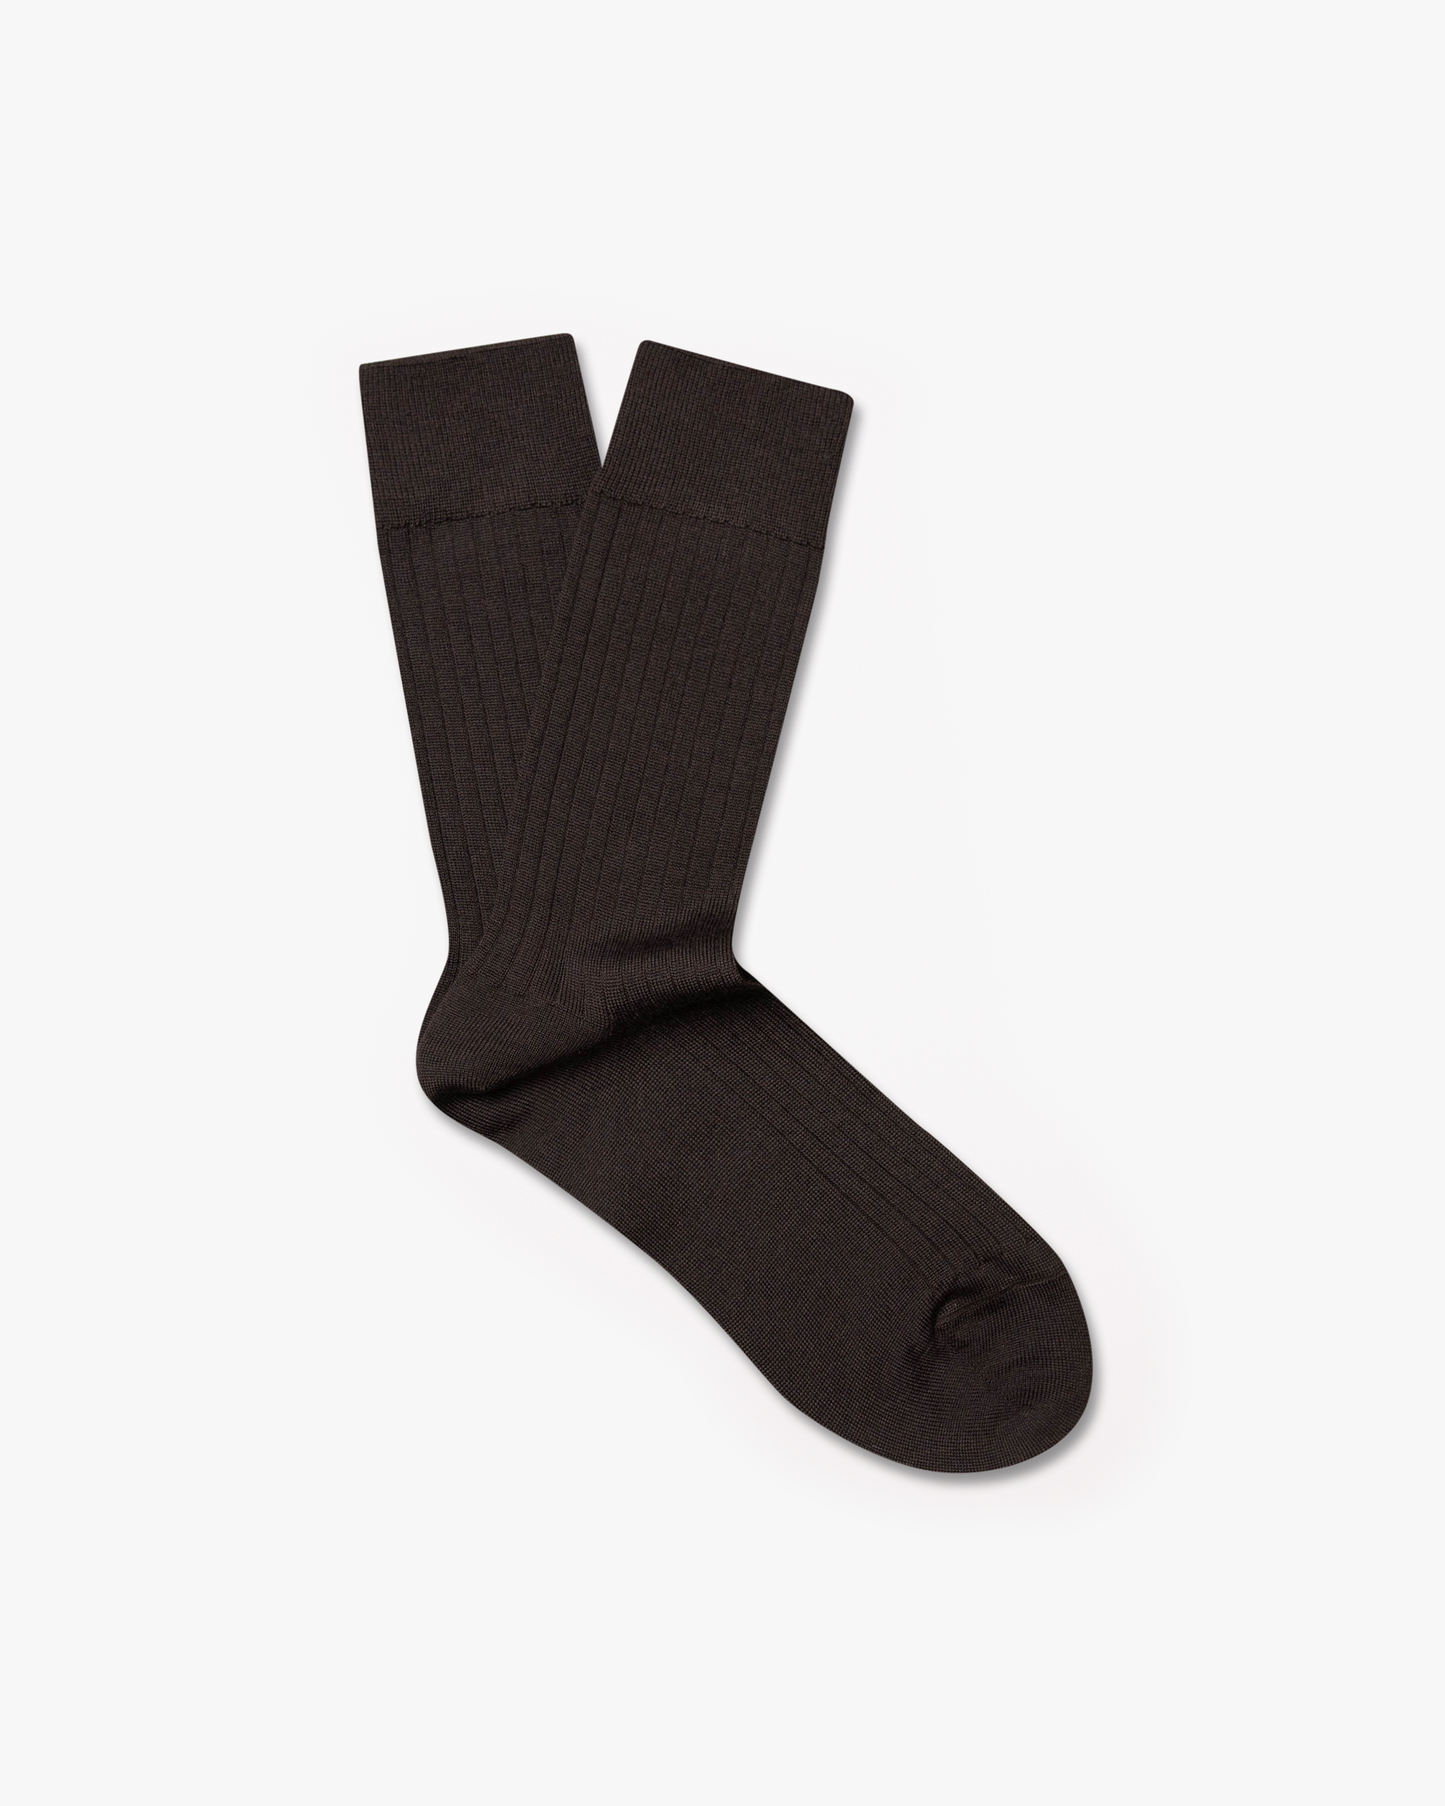 Ludvig – Merino Wool Socks – Brown